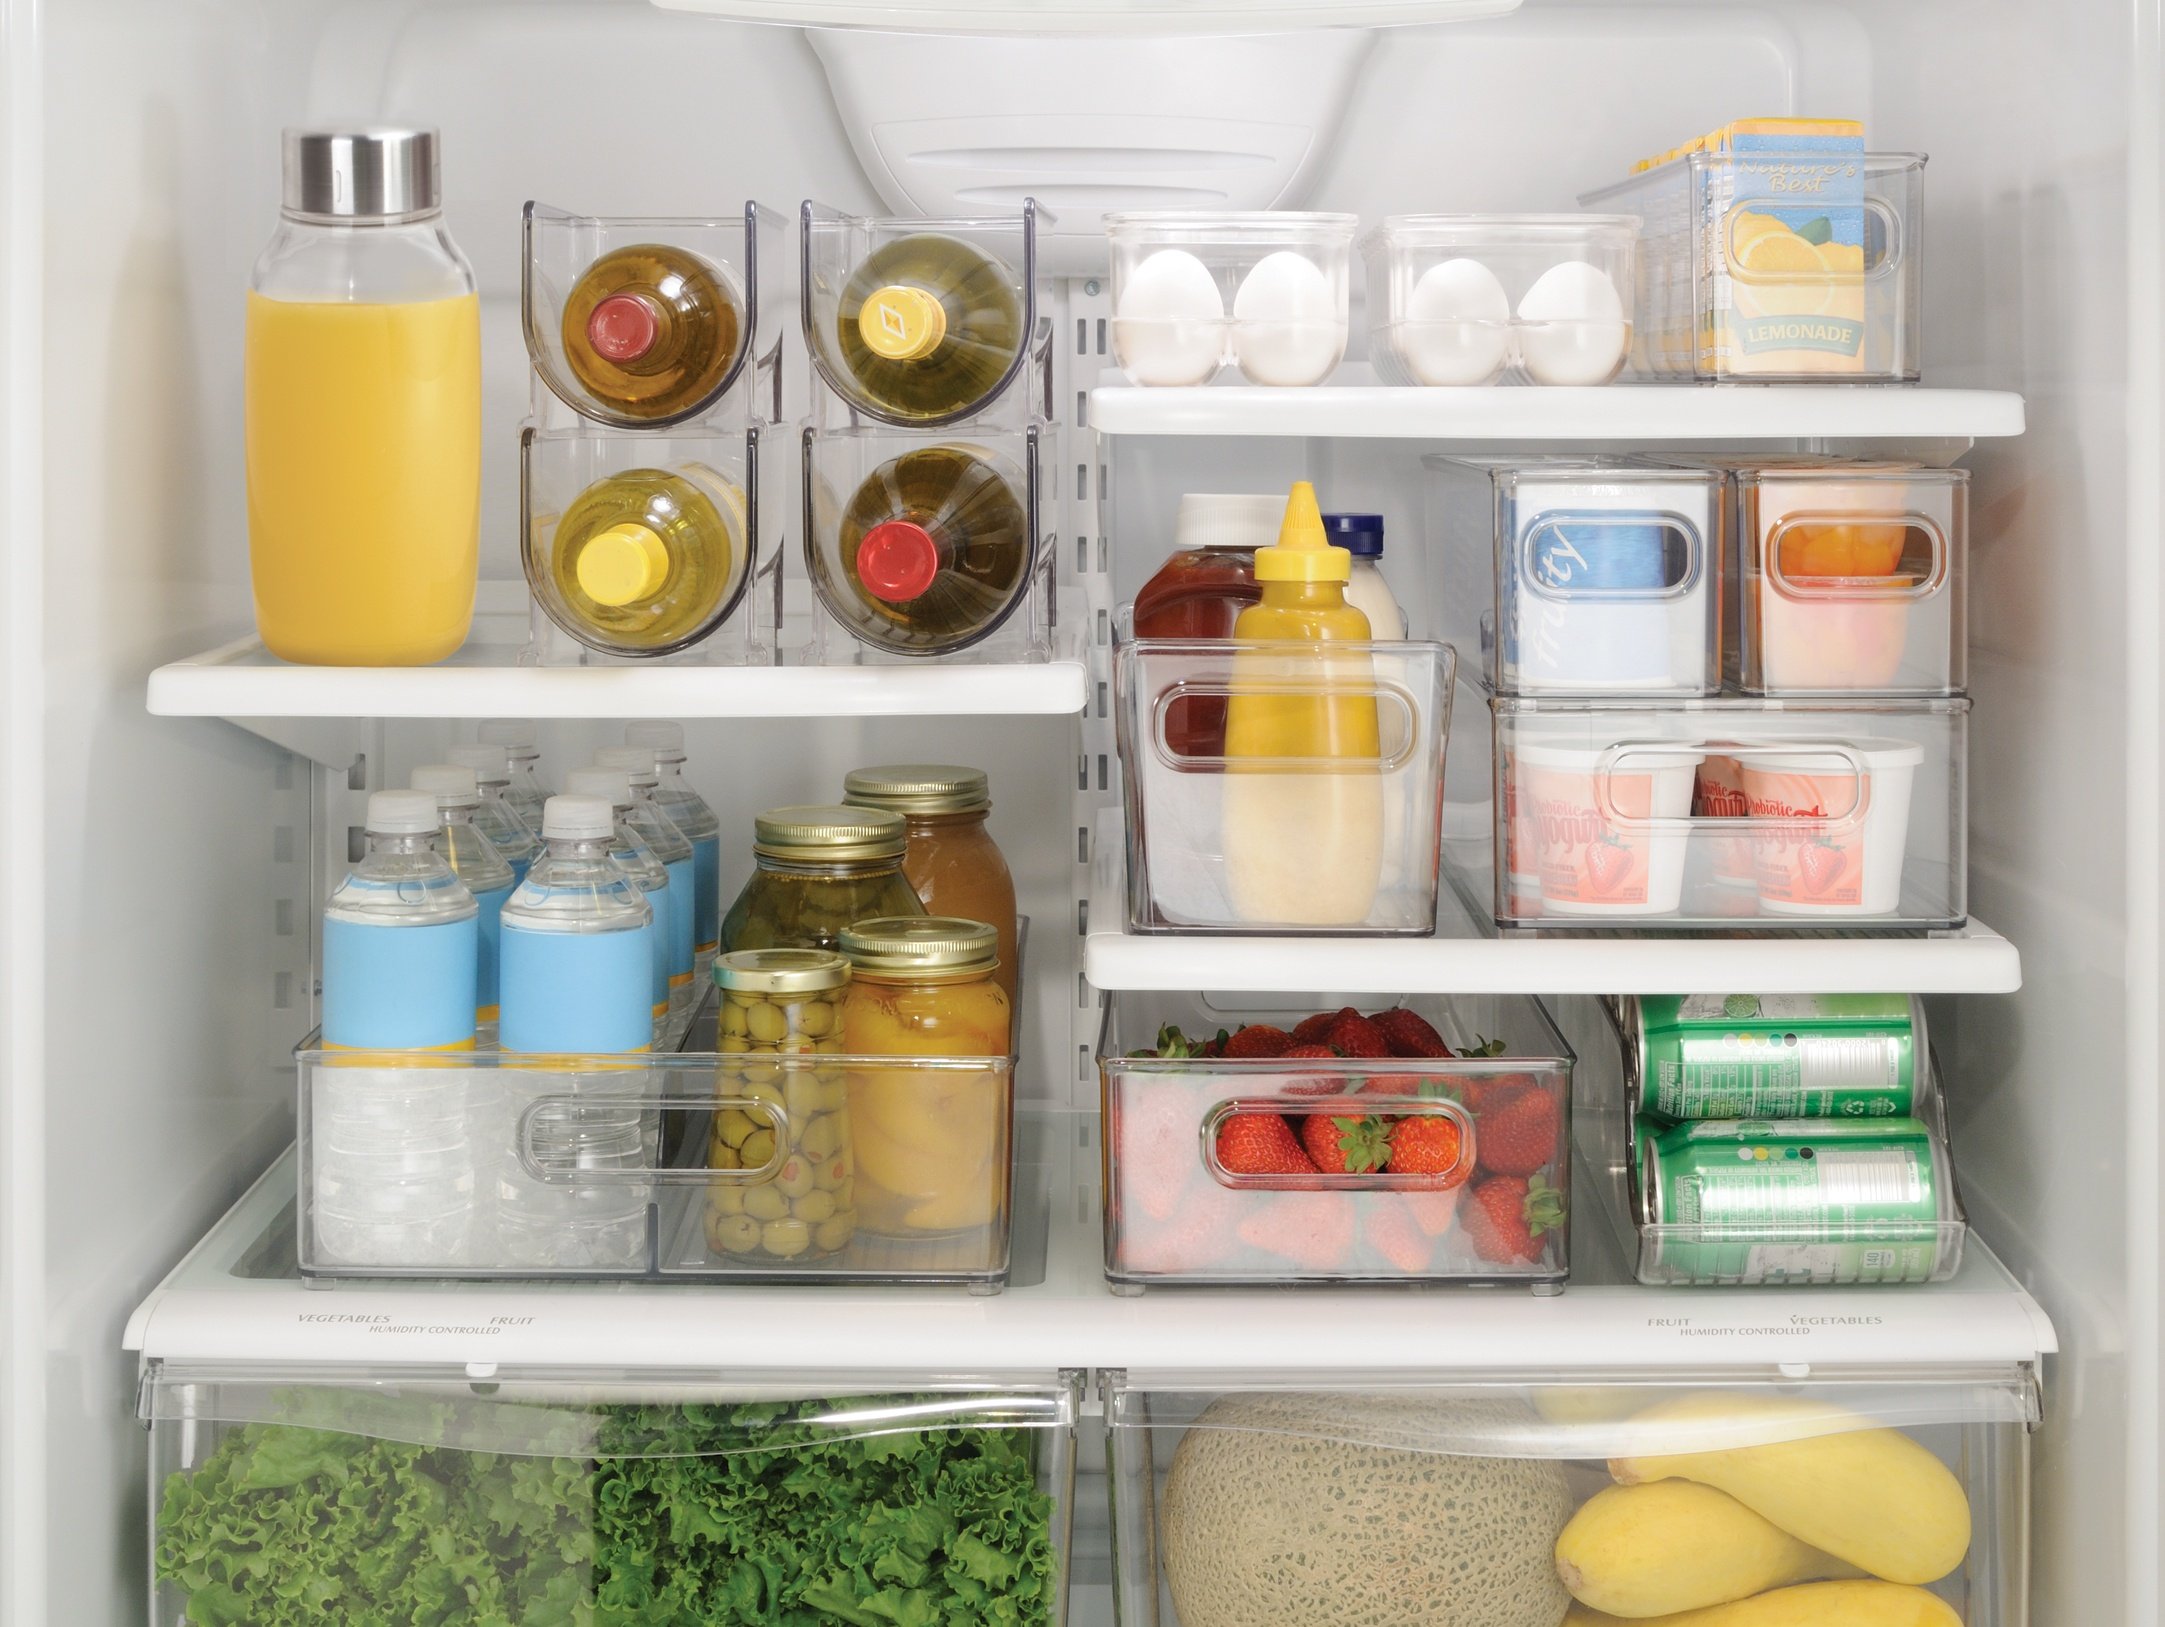 Холодное место хранения. Хранение продуктов. Организация пространства в холодильнике. Хранение в холодильнике. Органайзер для хранения в холодильнике.